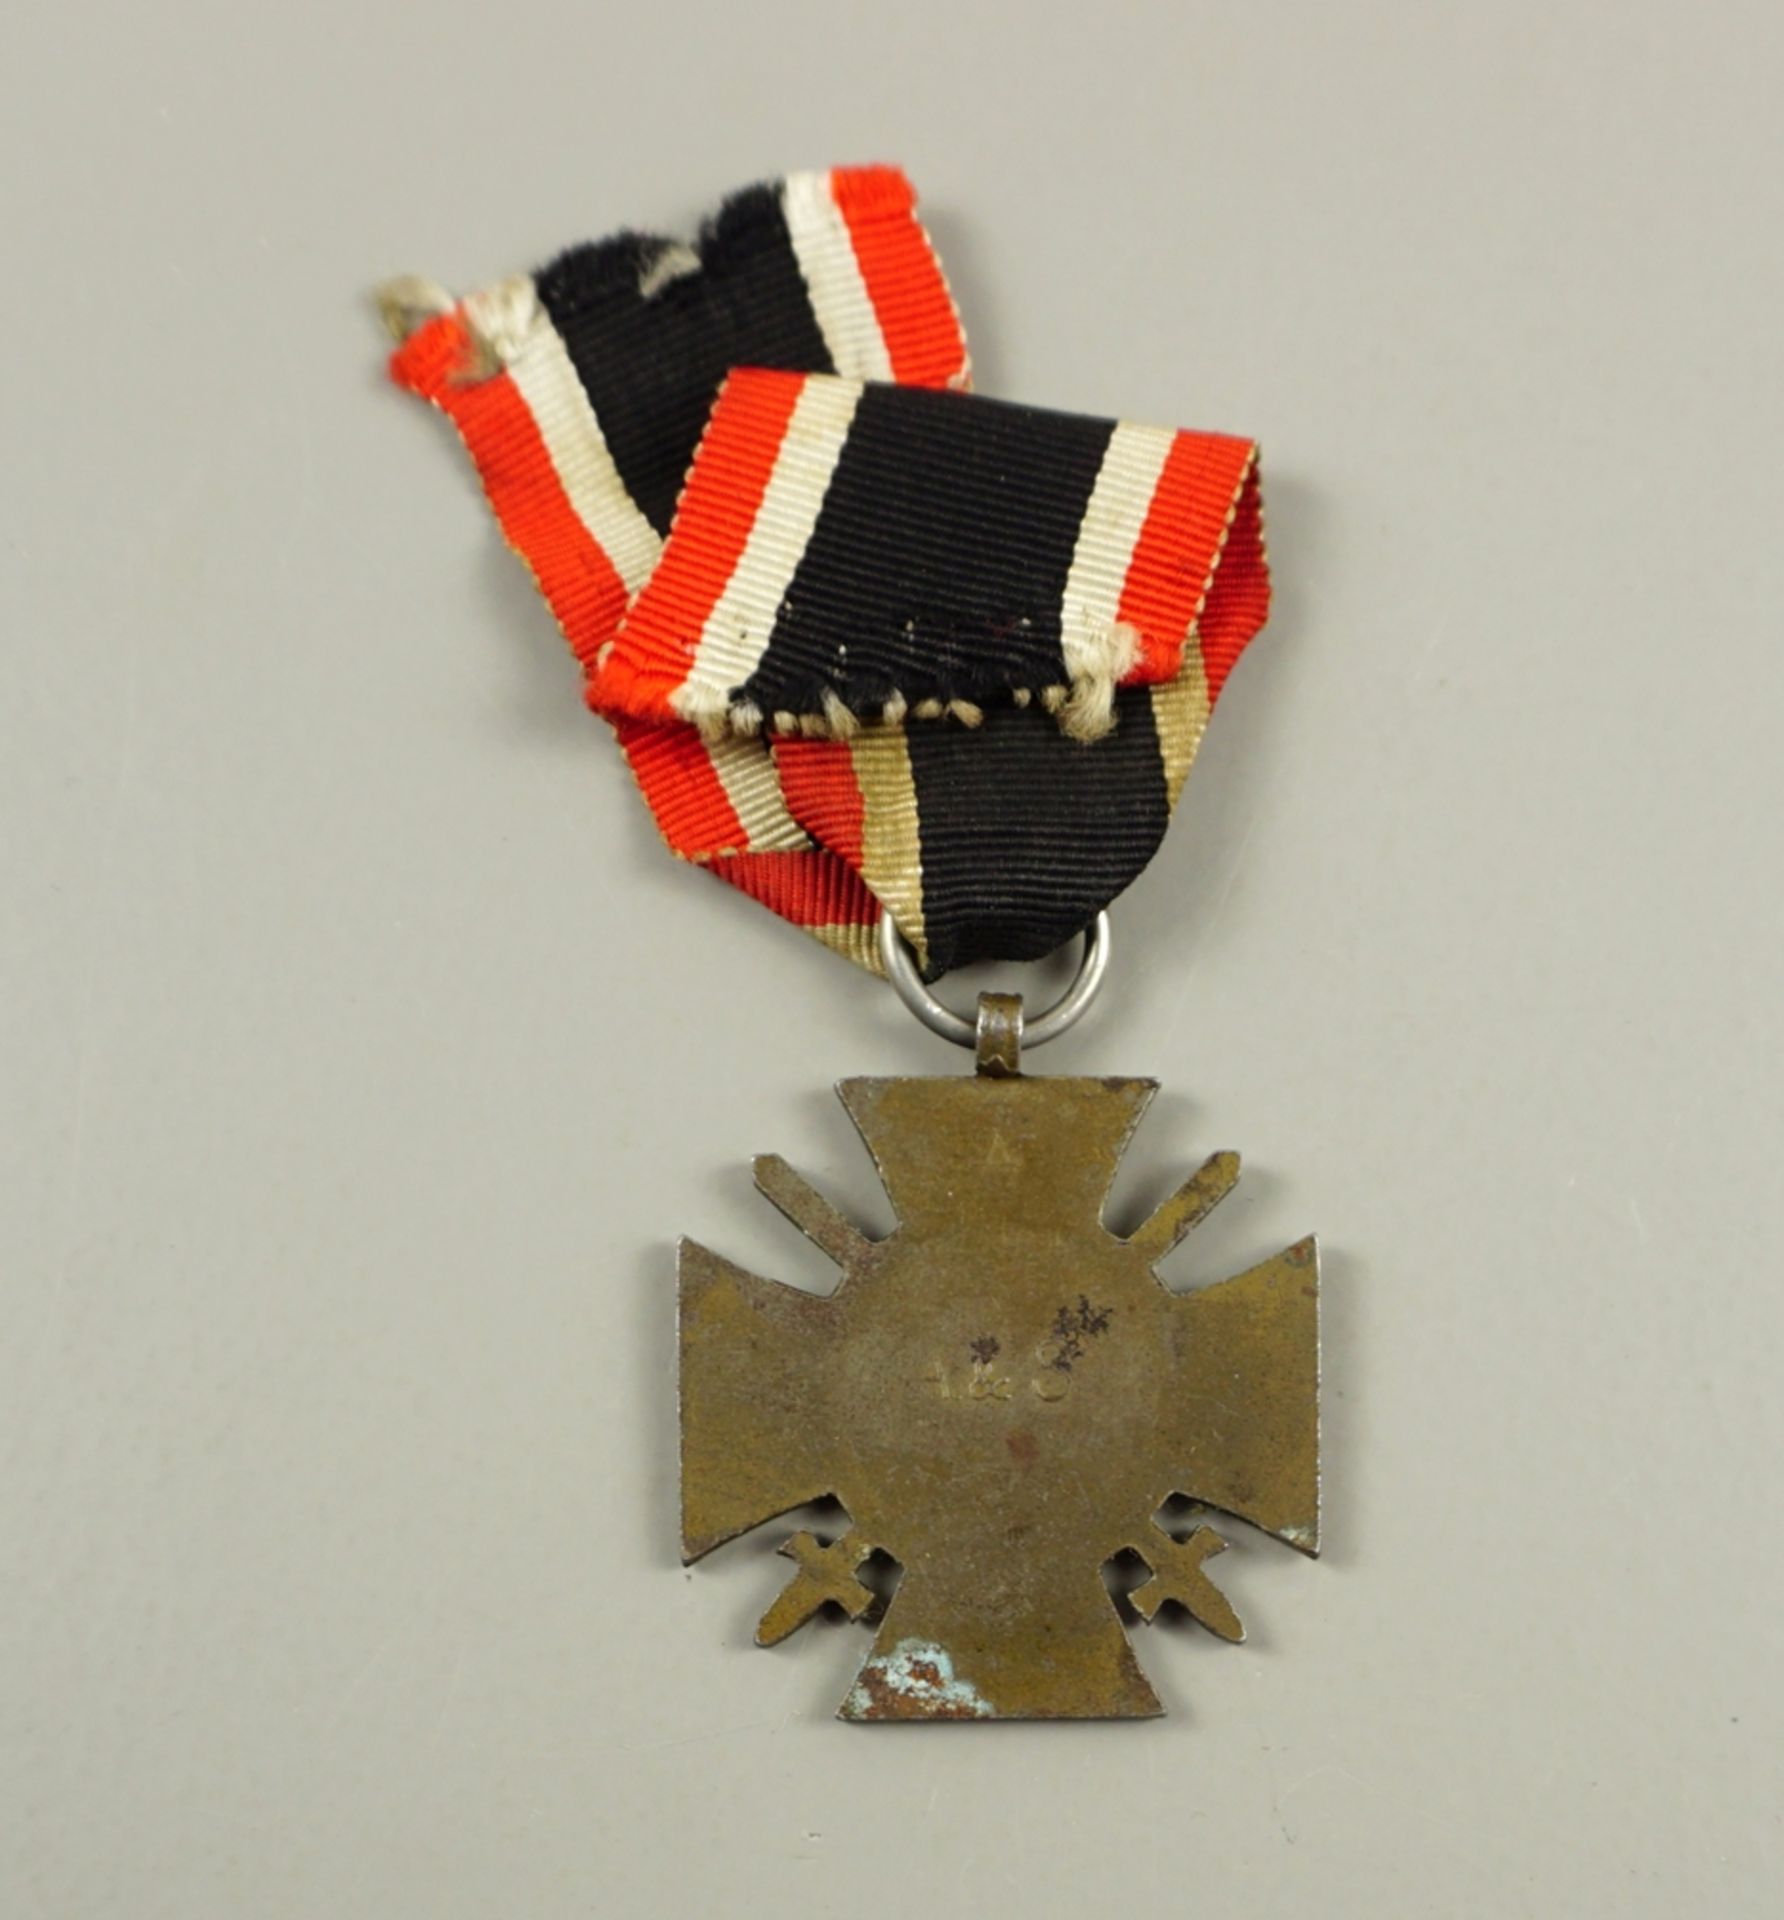 Ehrenkreuz für Frontkämpfer 1914-1918, mit Urkunde, verliehen 1935 - Image 2 of 2